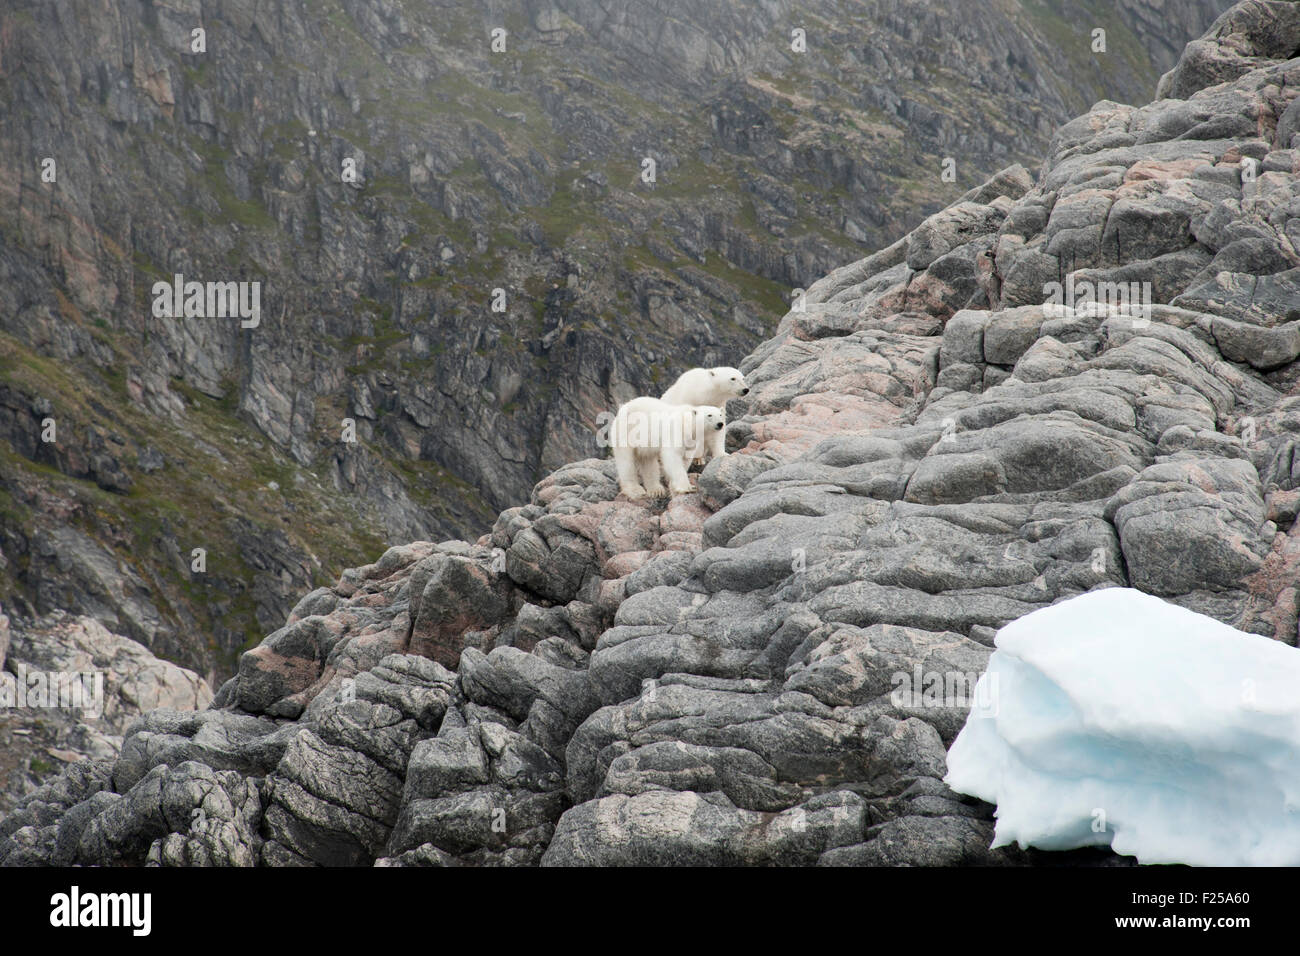 Madre y un cachorro de oso polar, Ursus maritimus, caminando sobre las rocas de la isla de Baffin, el Ártico canadiense Foto de stock